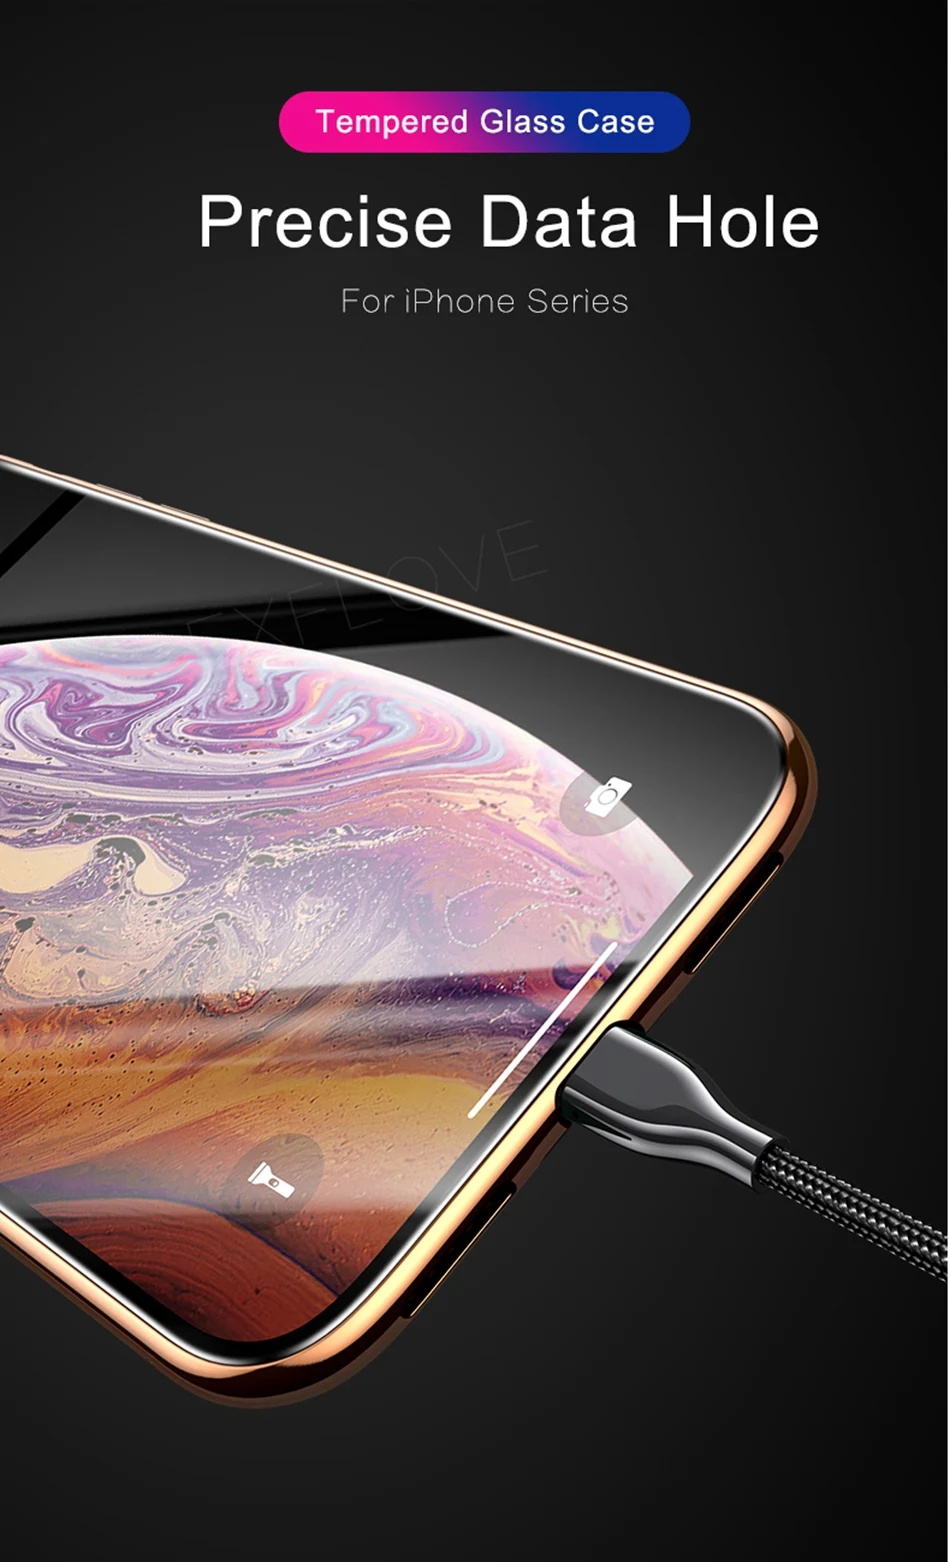 Металлический чехол для iPhone 6 7 8 Plus X XS XR MAX чехол Магнитный 360 противоударный Закаленное стекло чехол для Apple iPhone 11 Pro Max чехлы